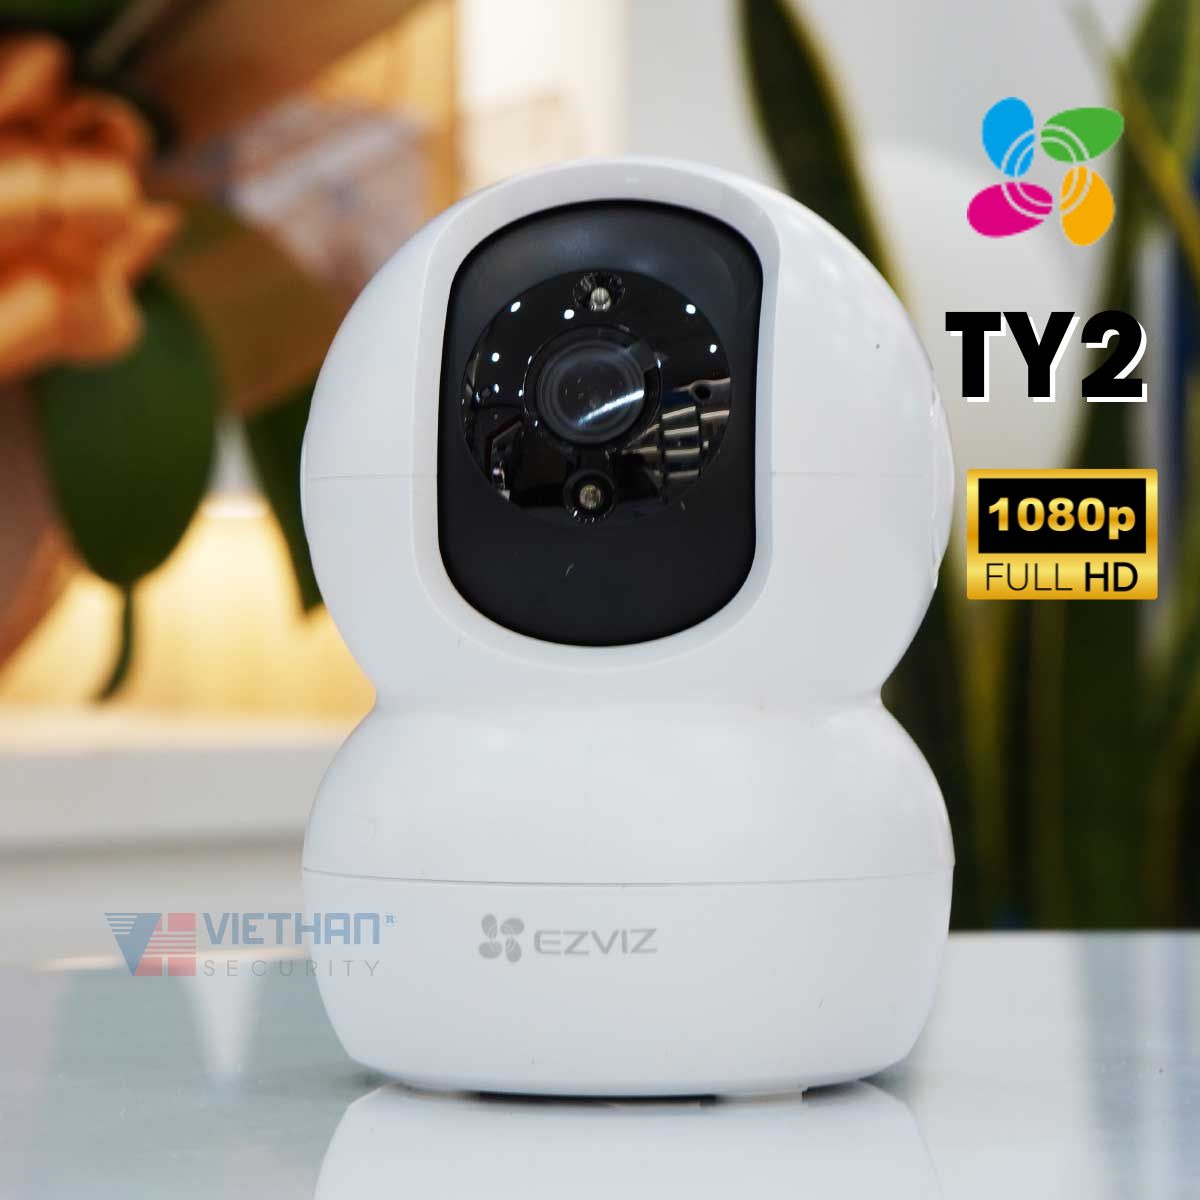 Camera không dây wifi EZVIZ TY2 1080P 2Mp thẻ nhớ Micro SD xoay 360 độ, âm thanh nói chuyễn 2 chiều